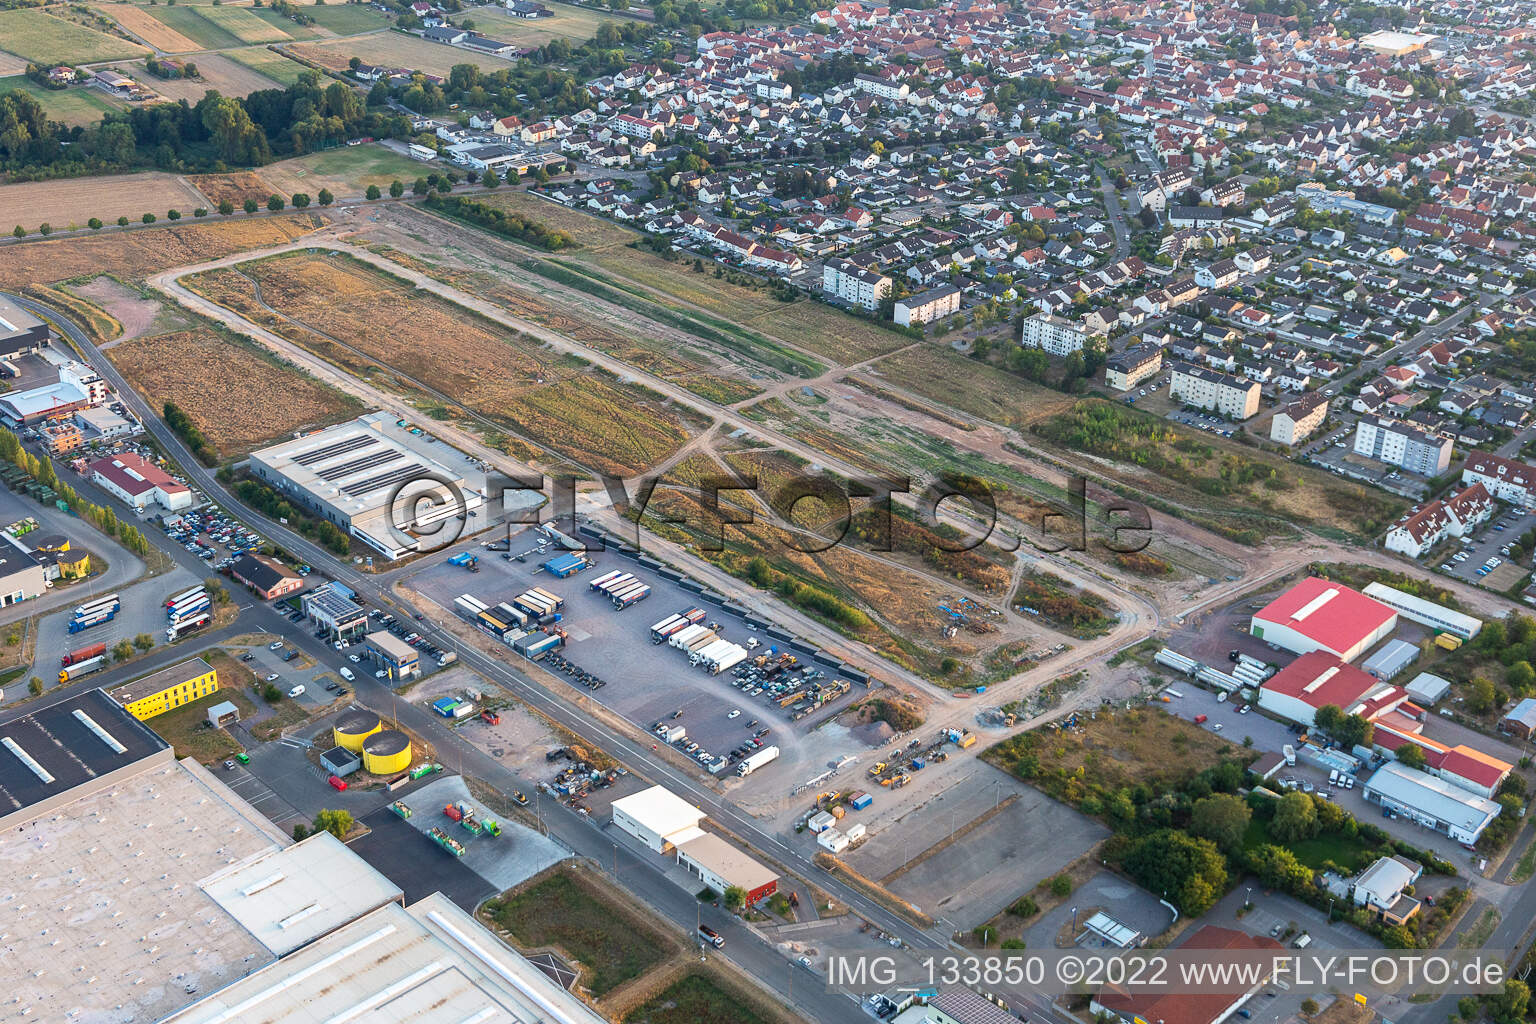 Vue aérienne de Zone d'agrandissement de la zone commerciale Interpark à Offenbach an der Queich dans le département Rhénanie-Palatinat, Allemagne